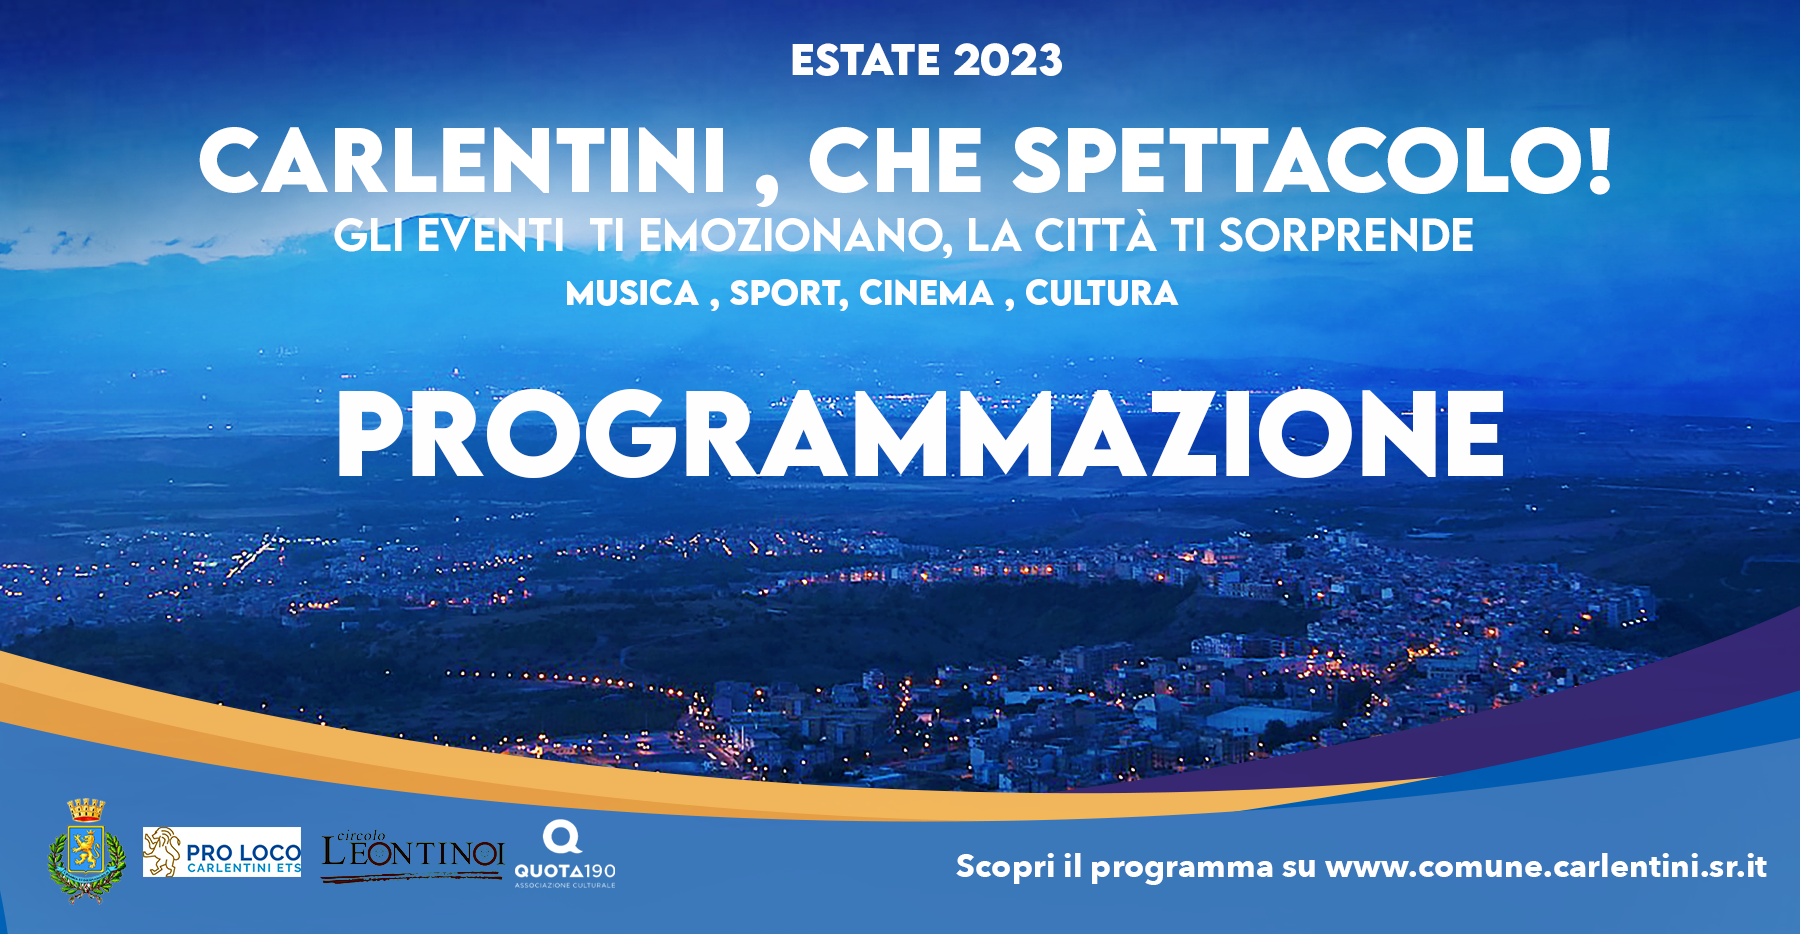 “Carlentini, che spettacolo!”: programma degli eventi – Estate 2023